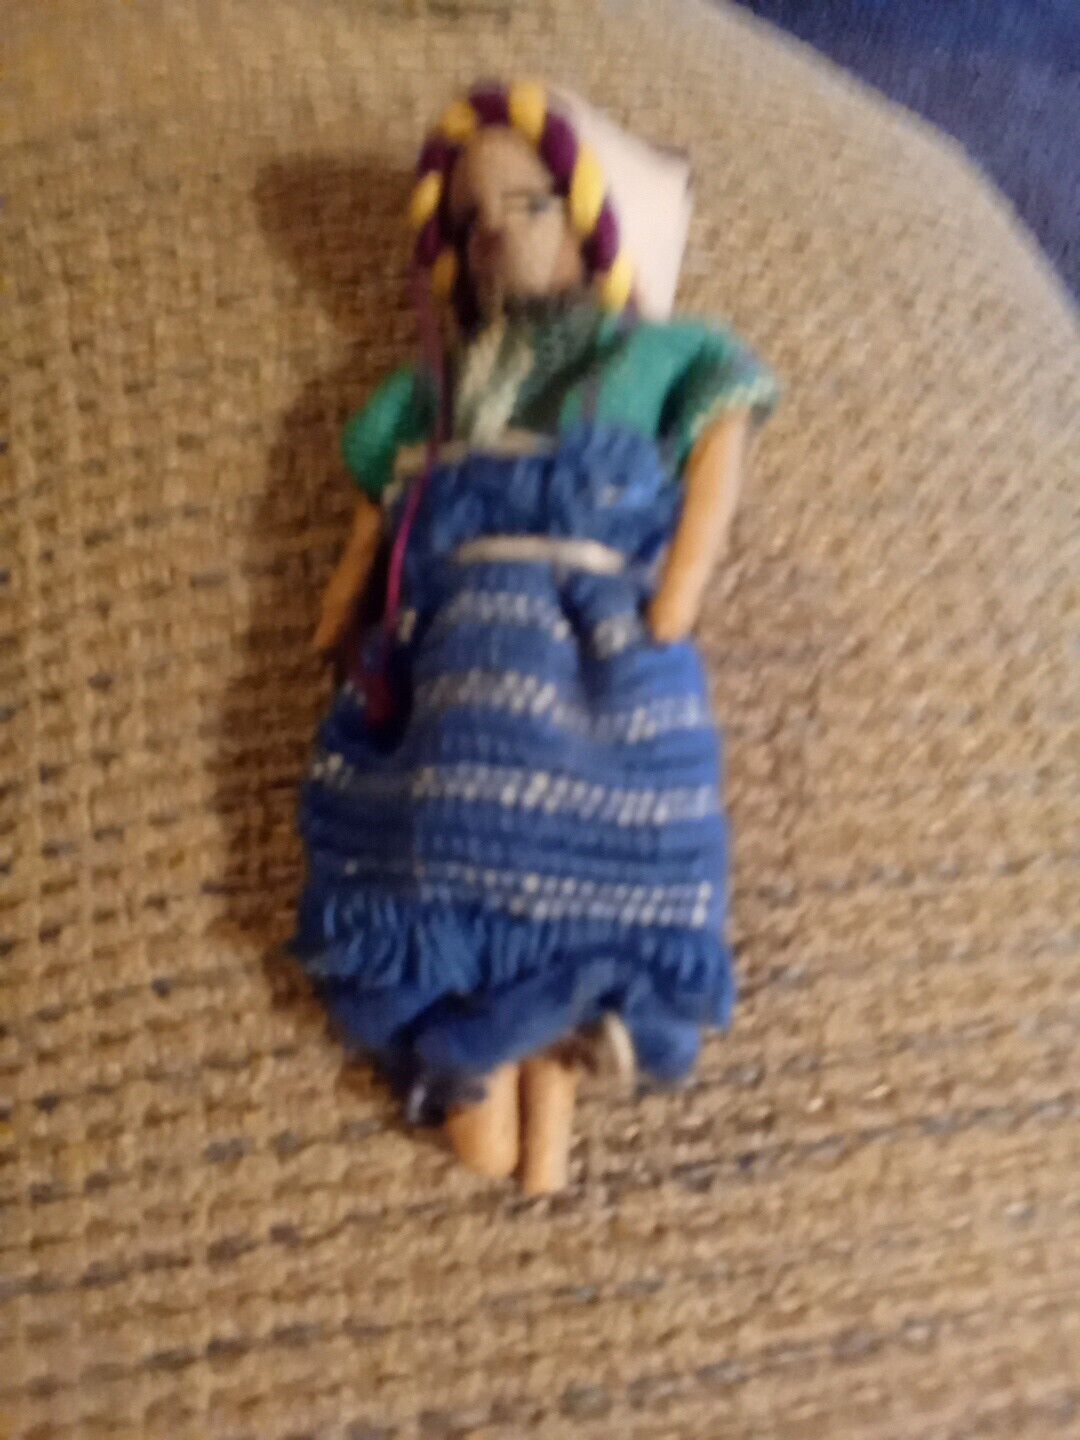 Vintage Handwoven Doll Miniature Figurine